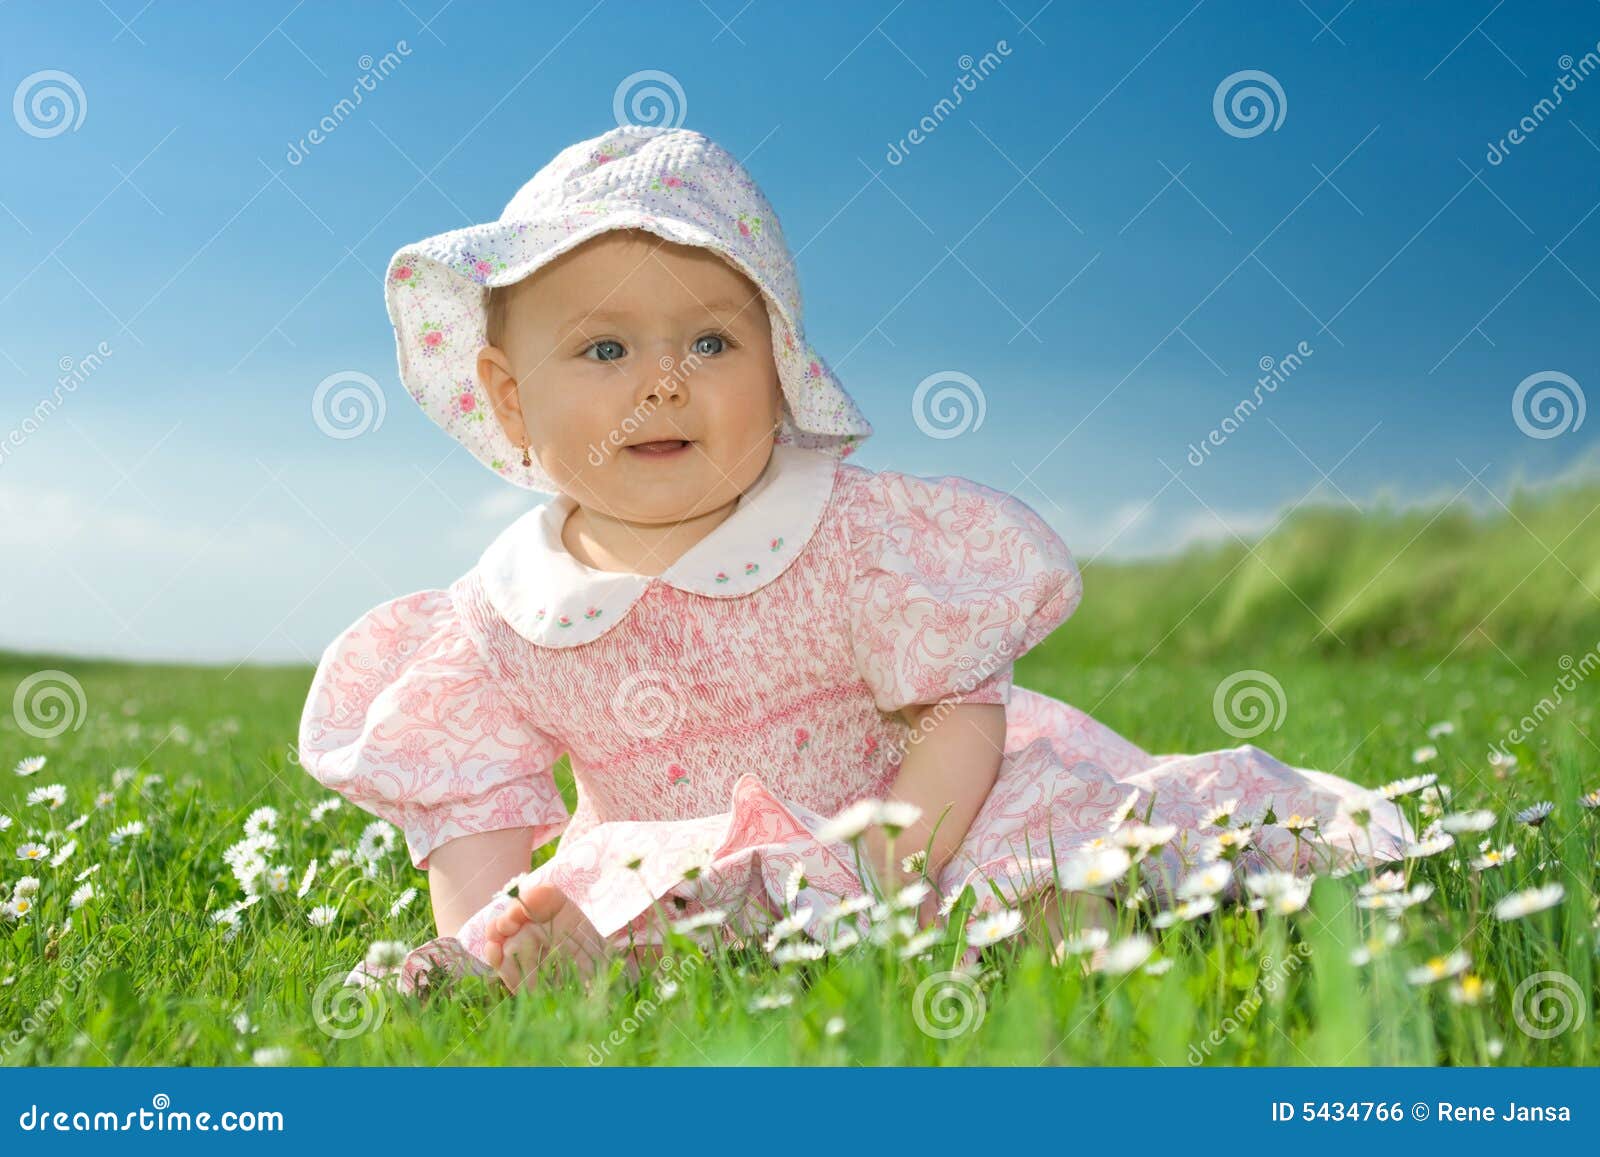 baby girl sat in flowery field